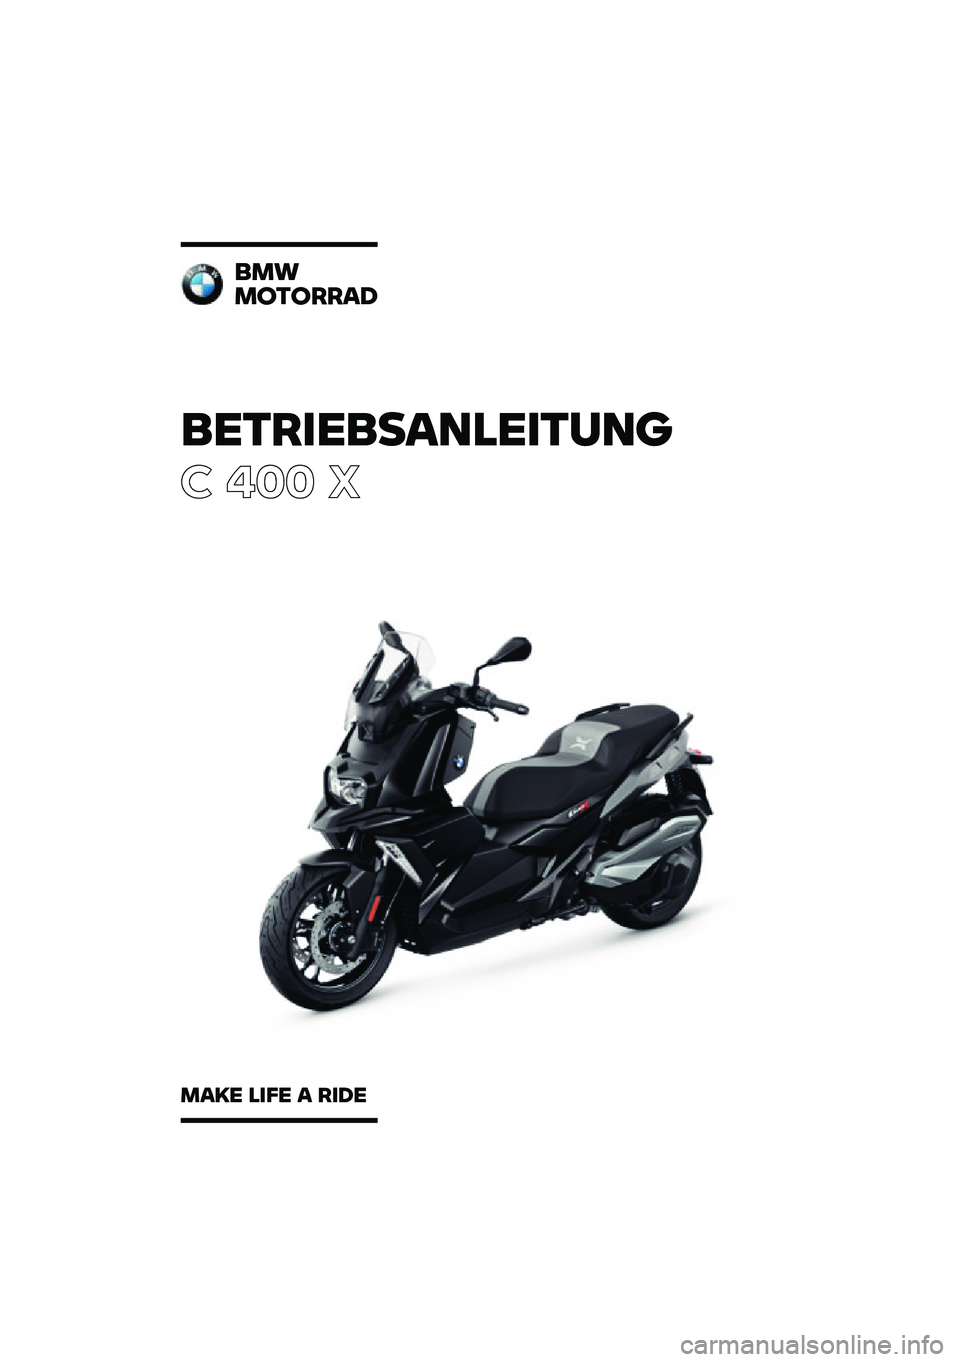 BMW MOTORRAD C 400 X 2020  Betriebsanleitung (in German) ���������\b�	�
�����	�\f
� ��� �
��
�
�
������\b�
�
�\b�� �
��� �\b ���� 